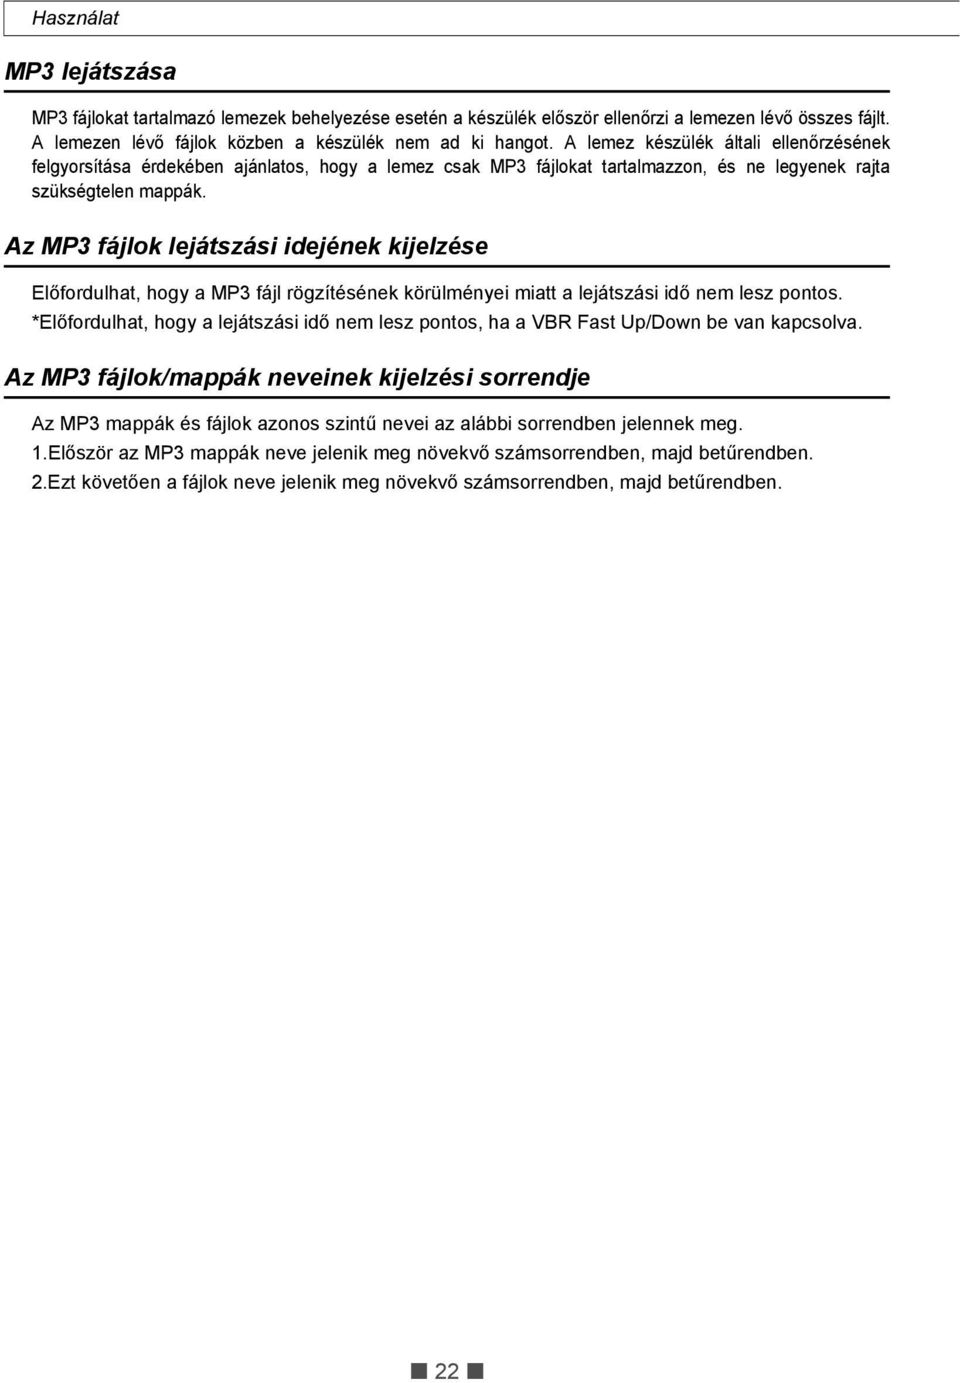 Az MP3 lejátszó használata - PDF Ingyenes letöltés